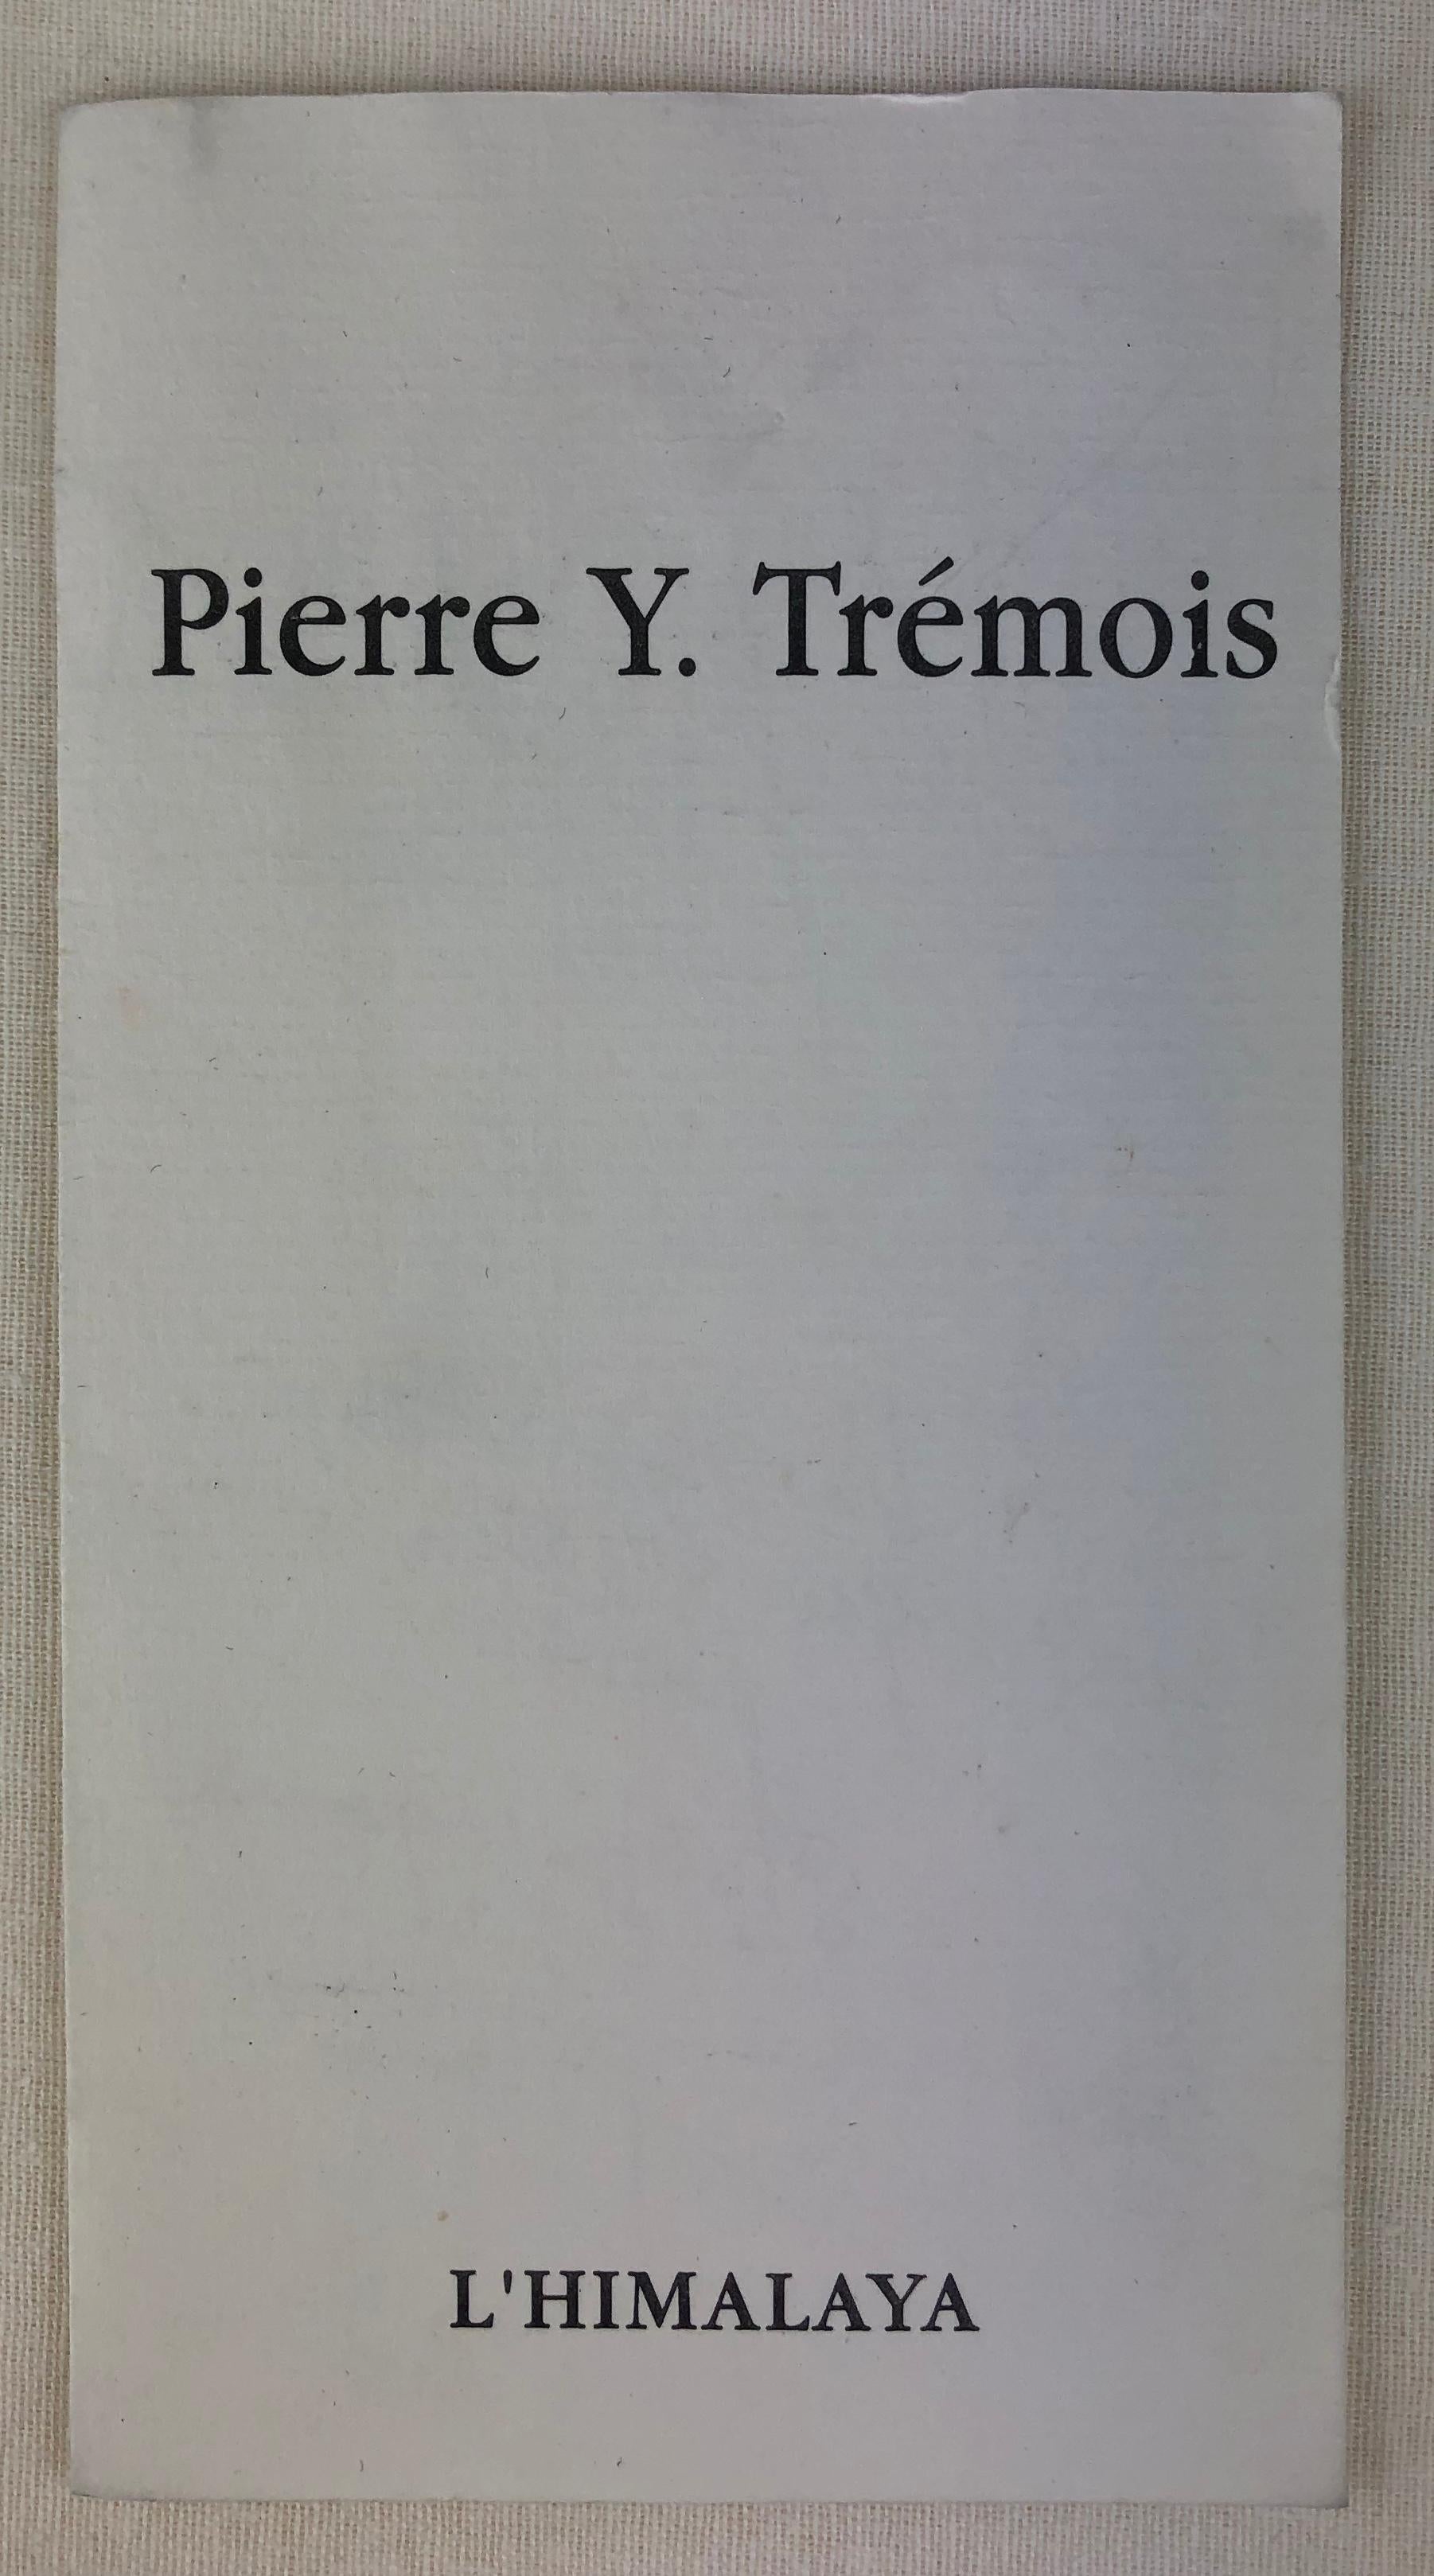 Pierre Yves Tremois Füllfederhalter in limitierter Auflage mit Originaletui (20. Jahrhundert)